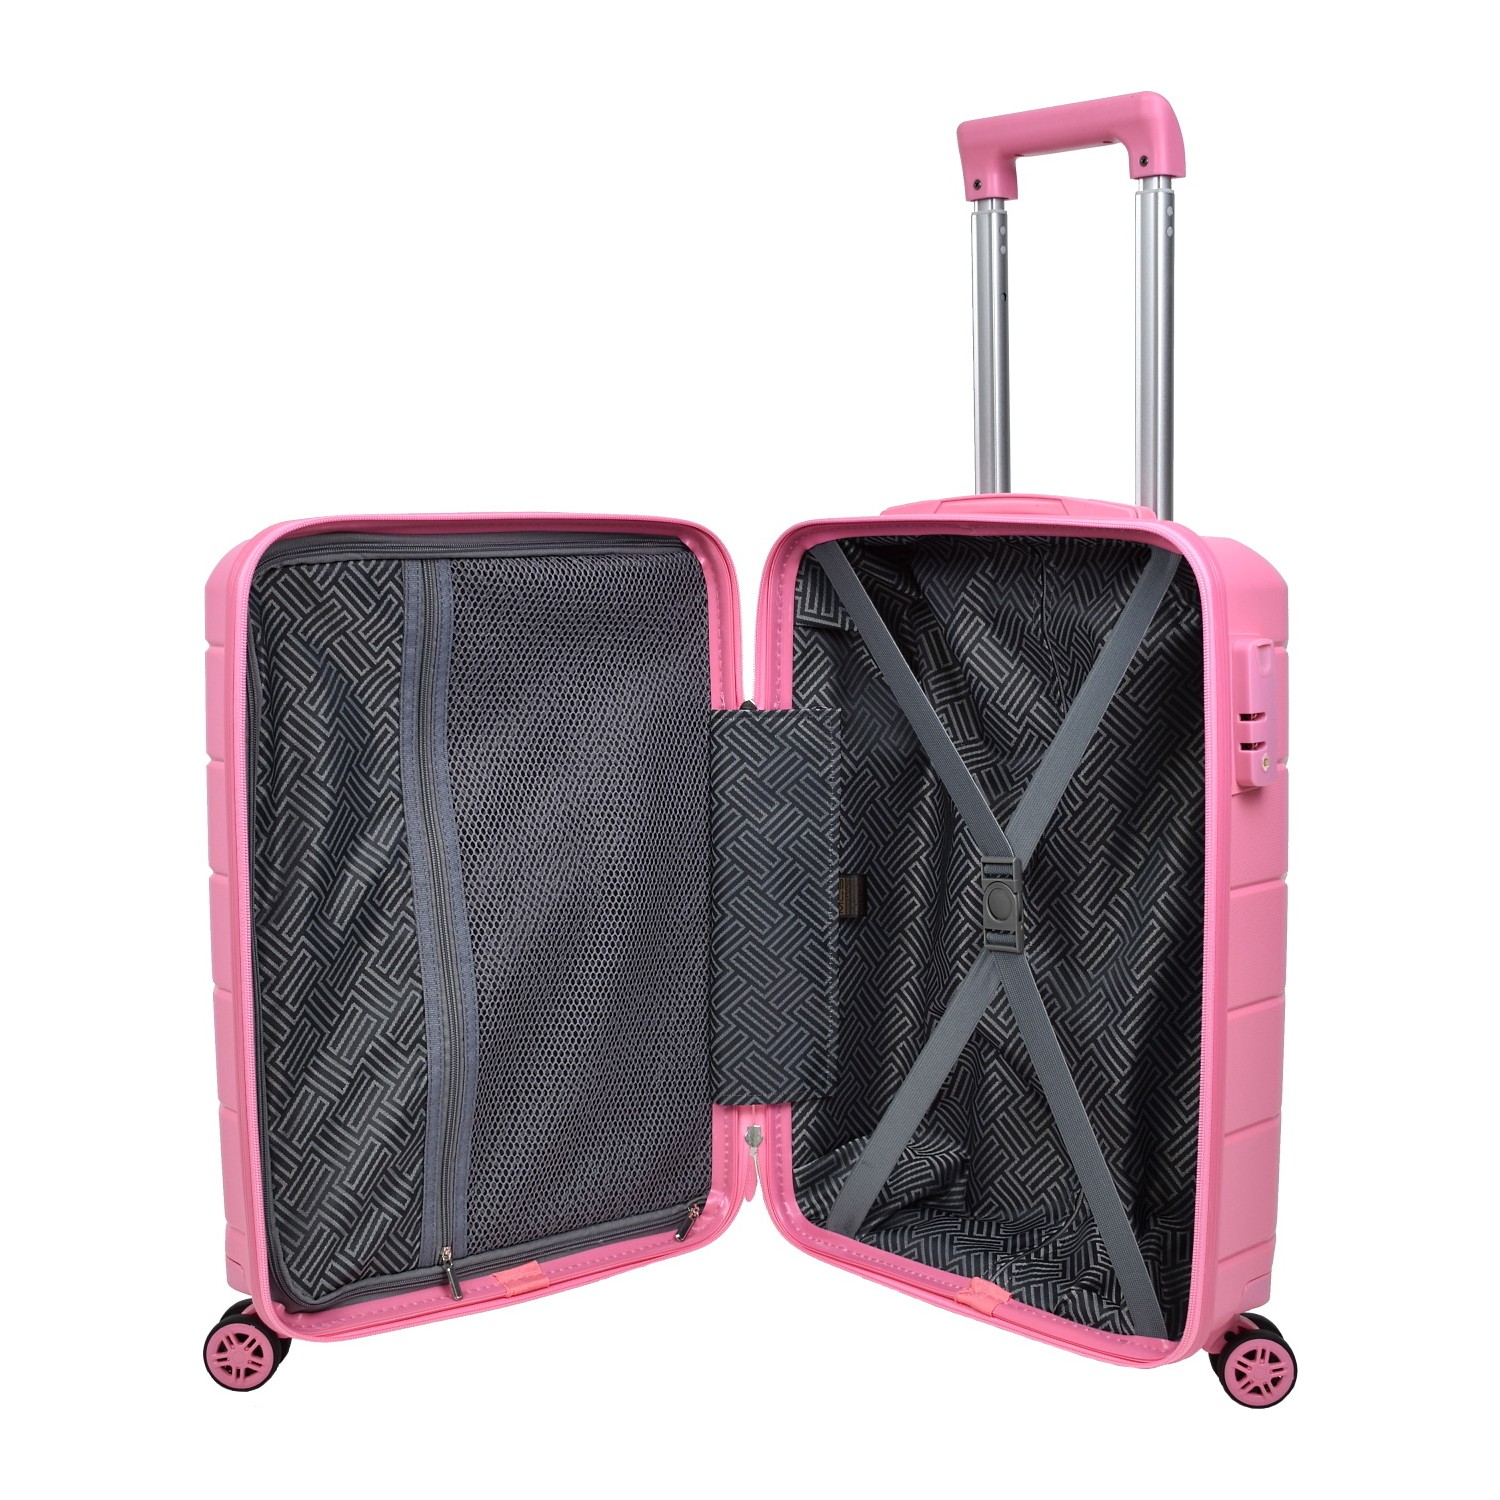 Маленький чемодан для ручьной клади из полипропилена MCS V366 S PUDRA! Для 8-10 кг! - 2